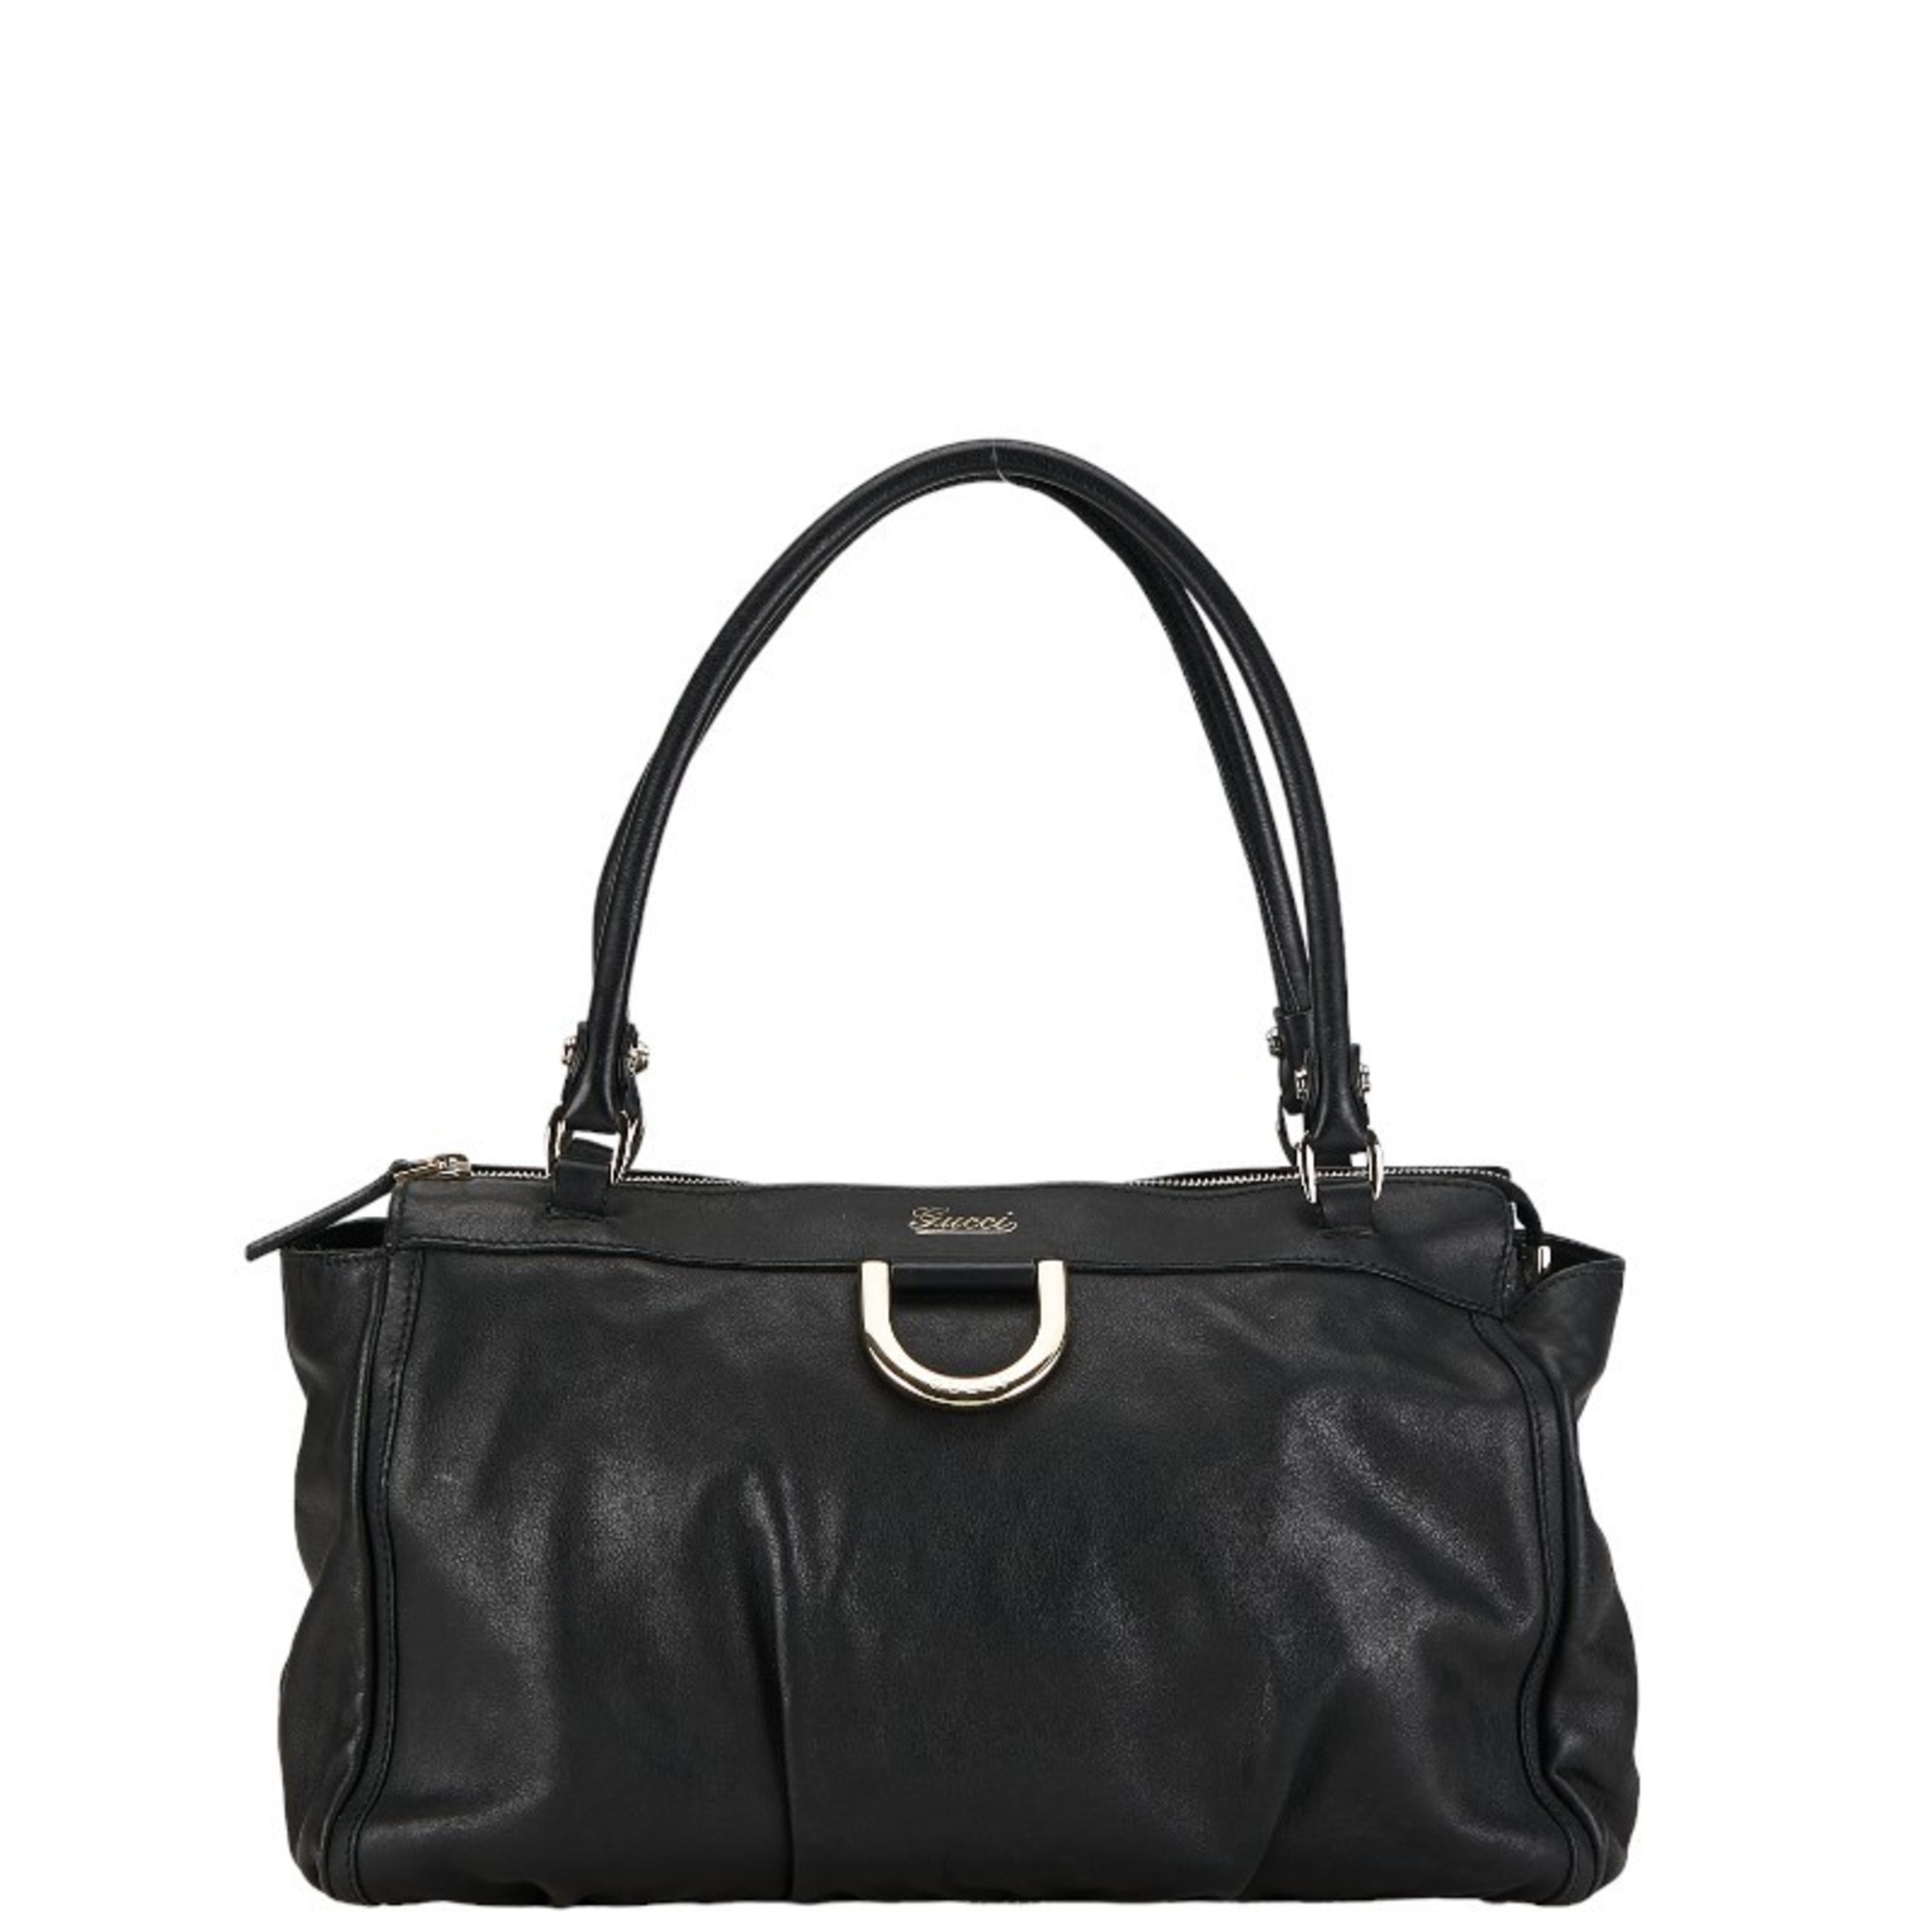 Gucci Handbag Tote Bag 189831 Black Silver Leather Women's GUCCI